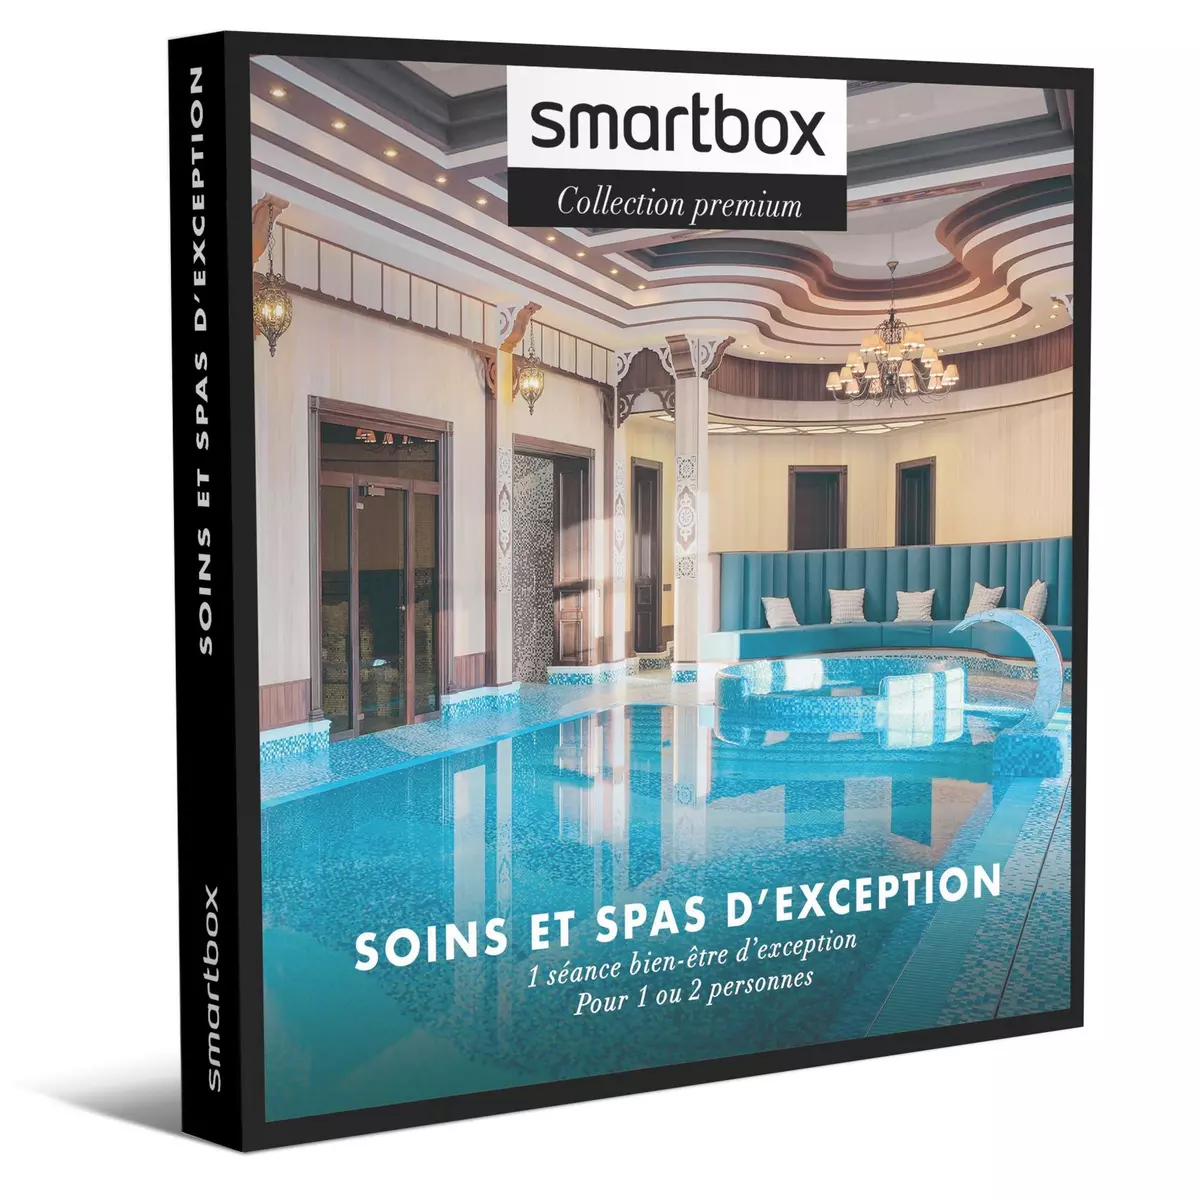 Smartbox Soins et spas d'exception - Coffret Cadeau Bien-être